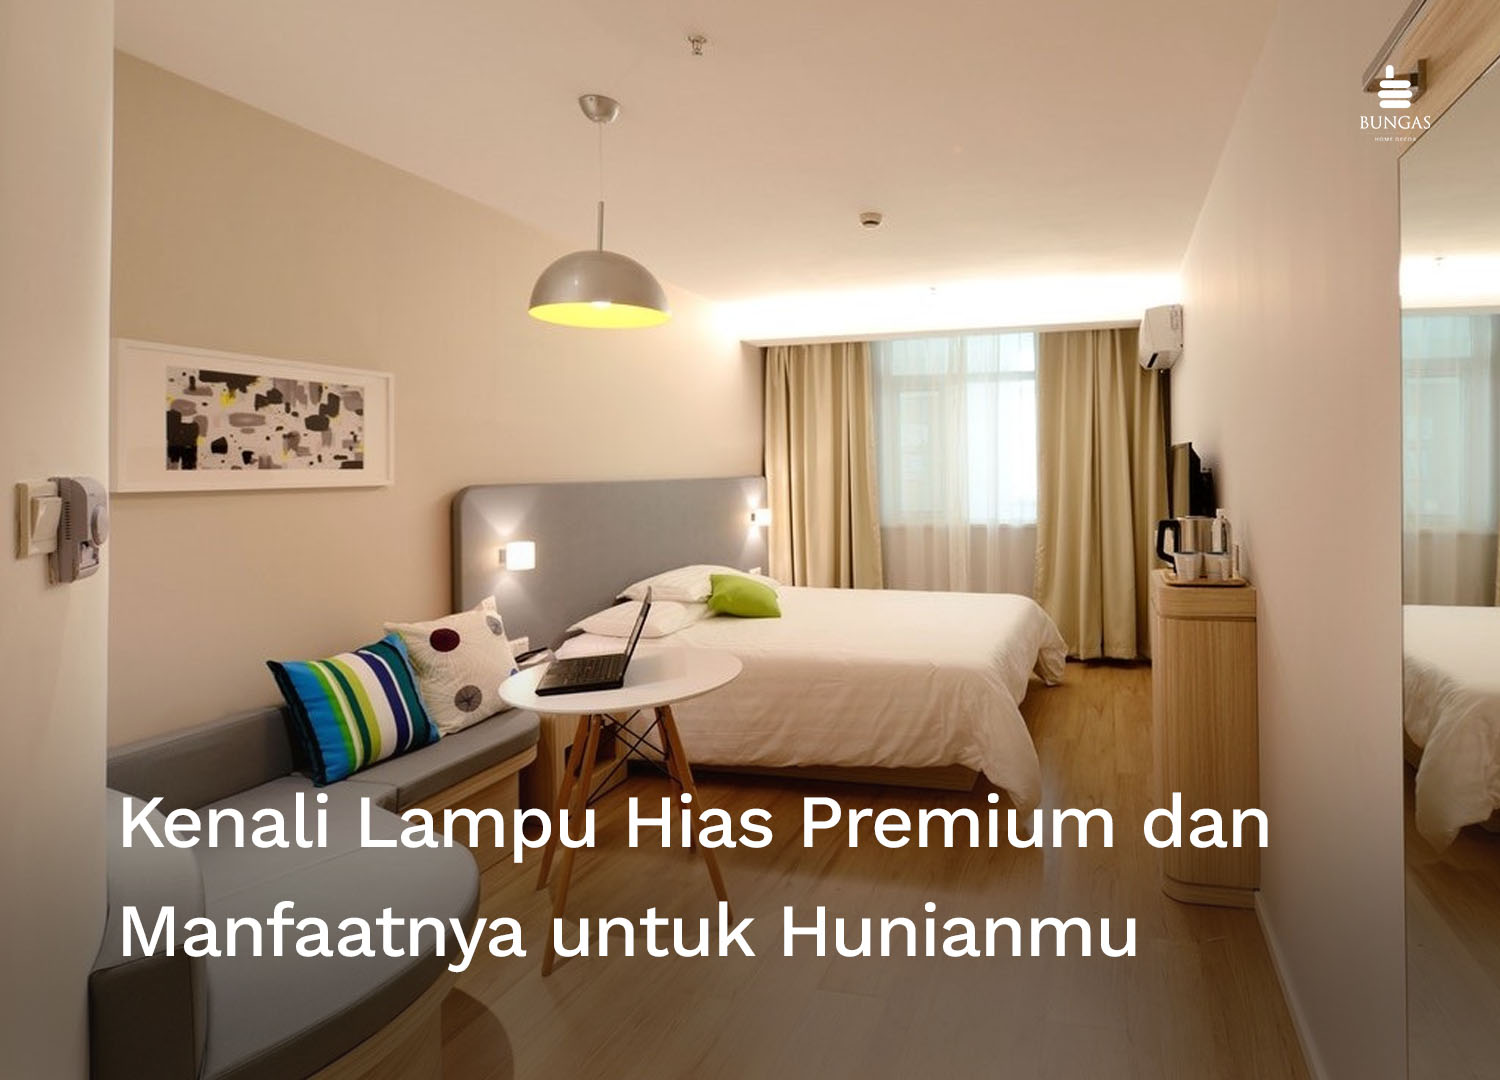 You are currently viewing Kenali Lampu Hias Premium dan Manfaatnya untuk Hunianmu